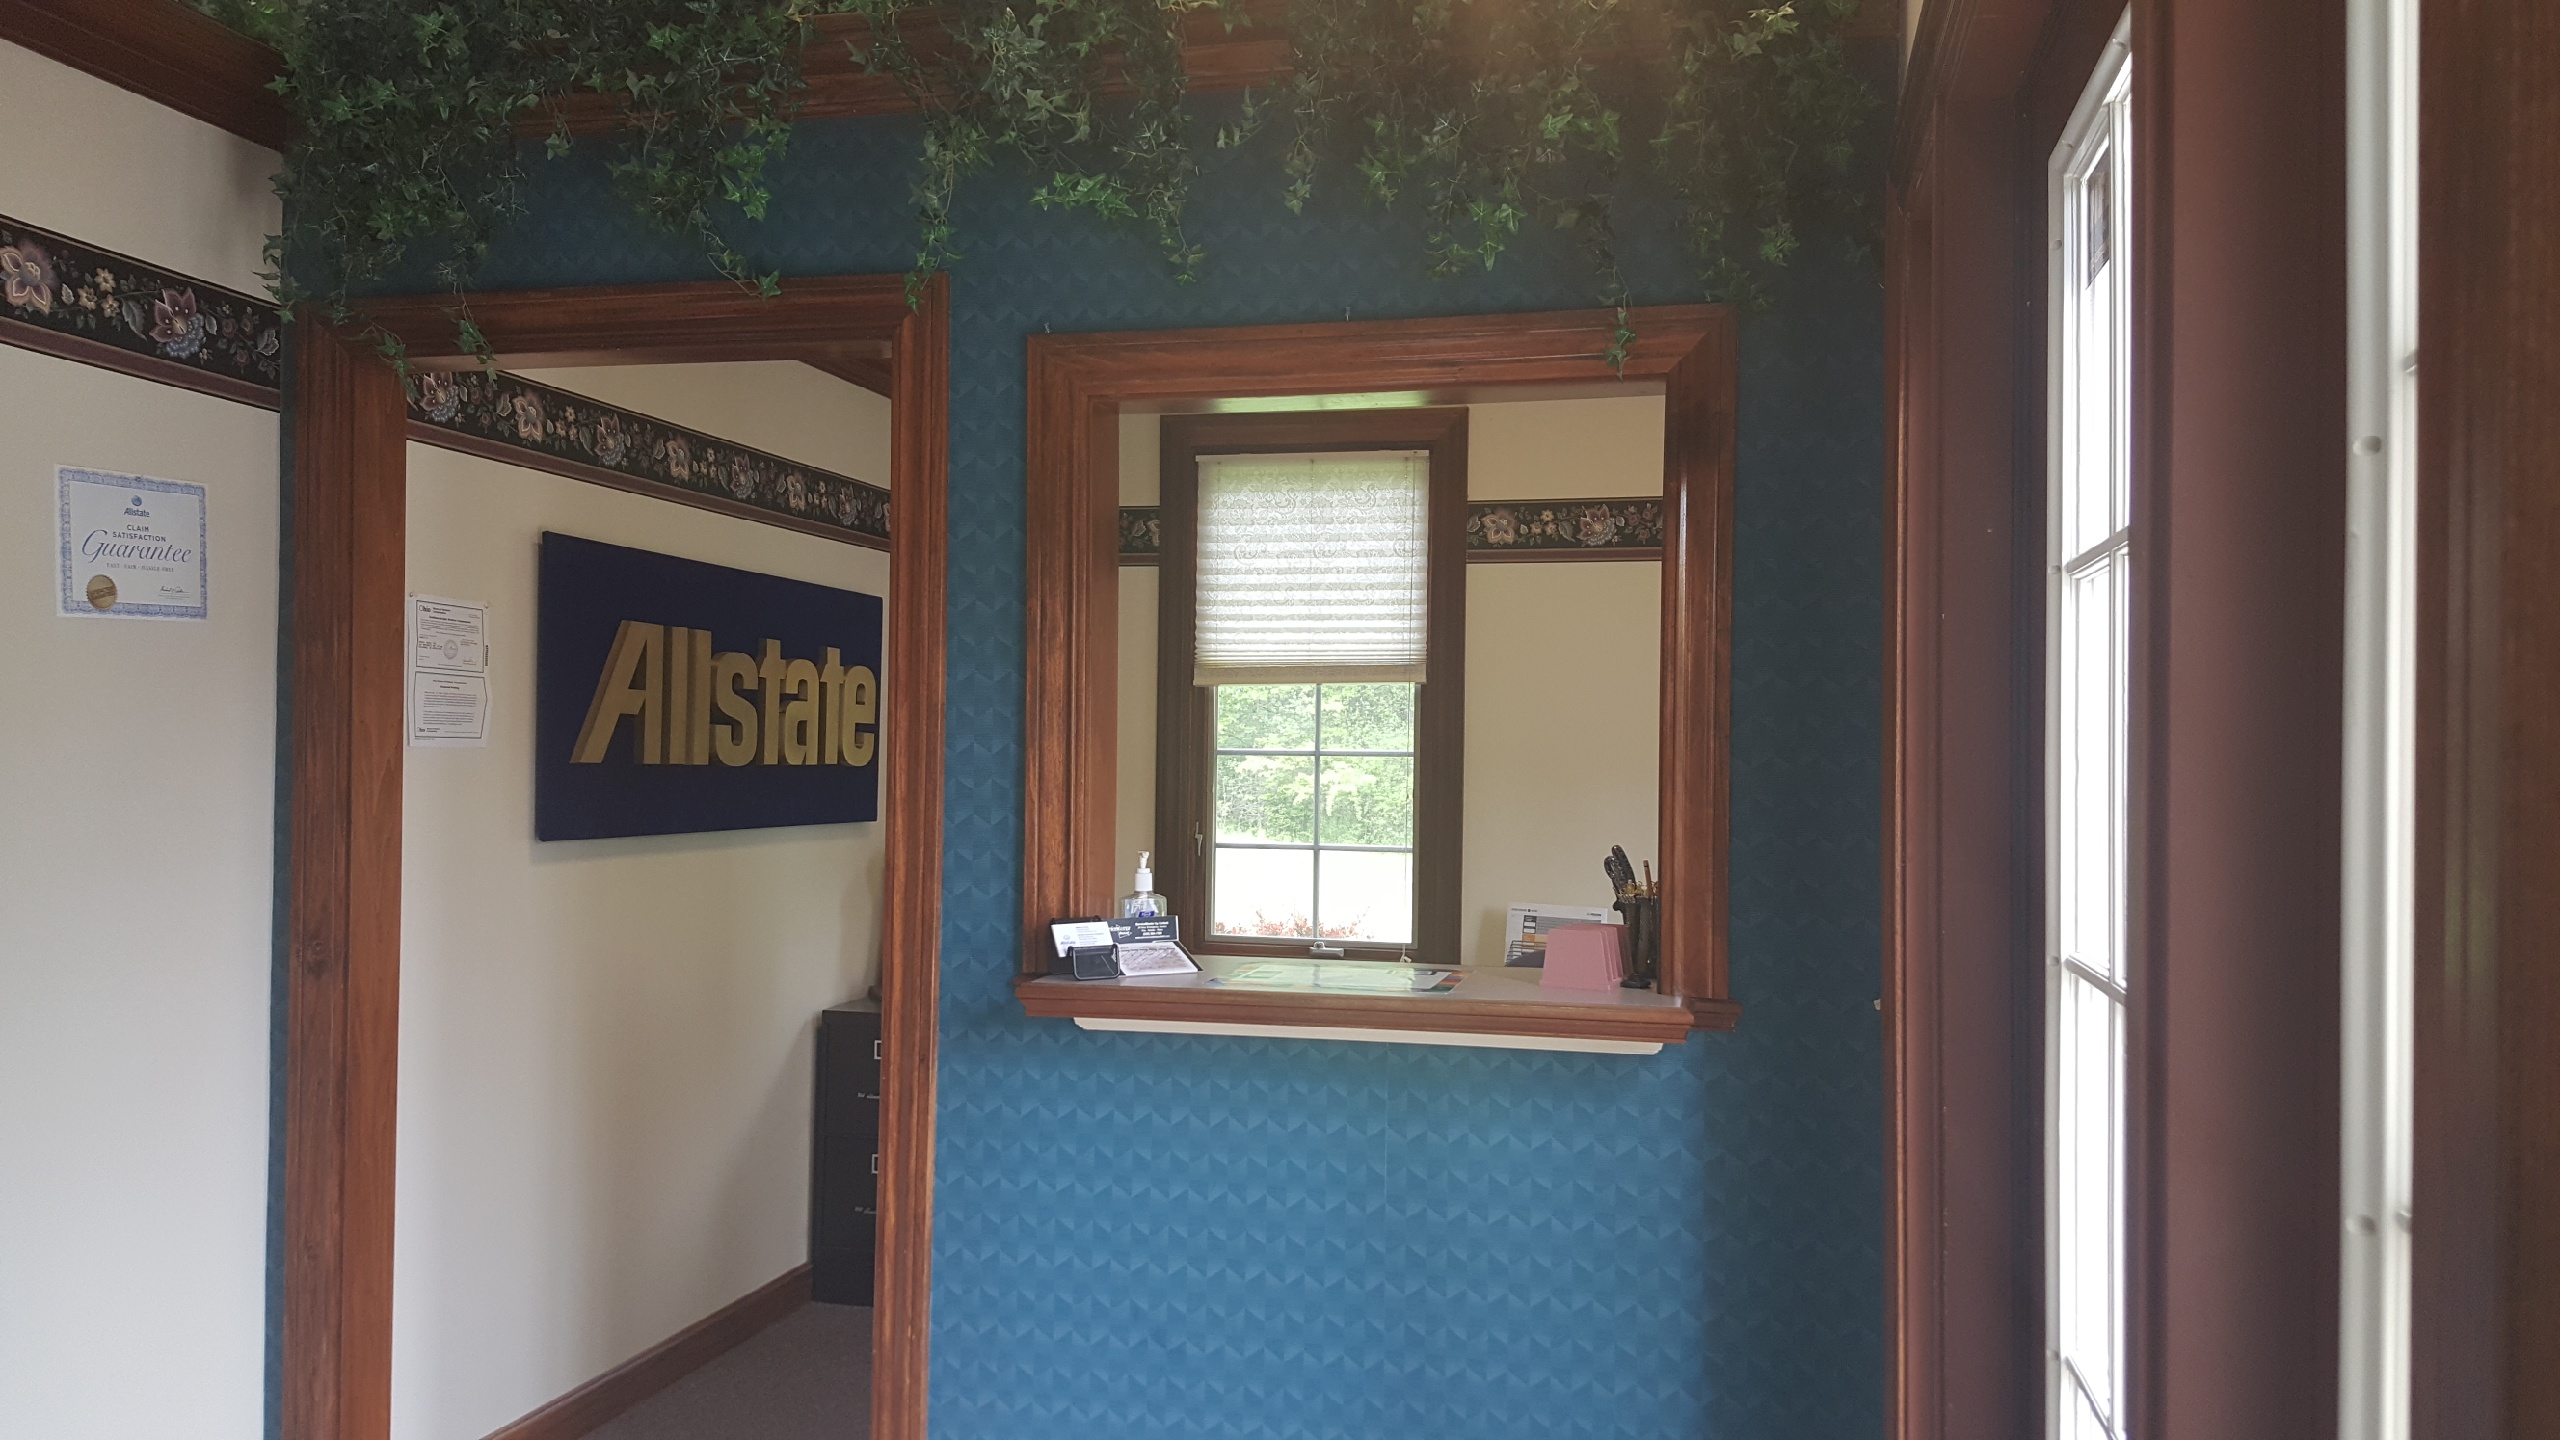 John Karas: Allstate Insurance Photo